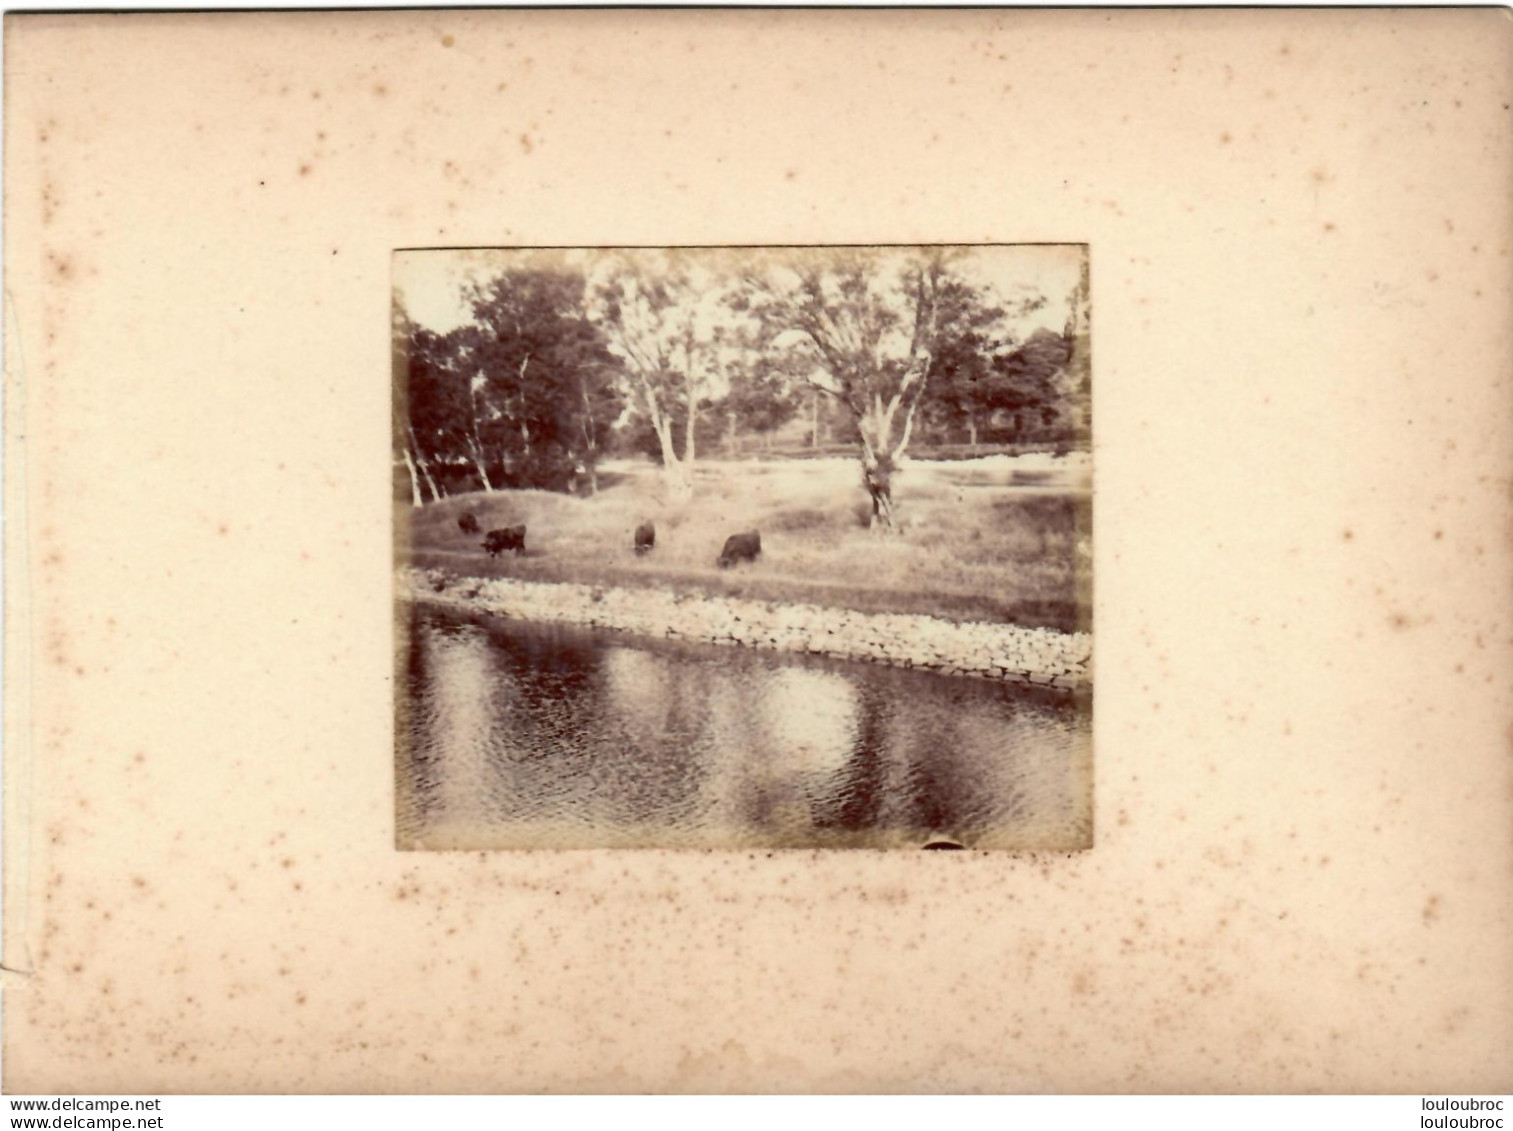 MUIRTOWN LE CANAL CALEDONIEN  ECOSSE FIN 19em PHOTO ORIGINALE 8x7CM COLLEE SUR CARTON DE 18x13cm - Alte (vor 1900)